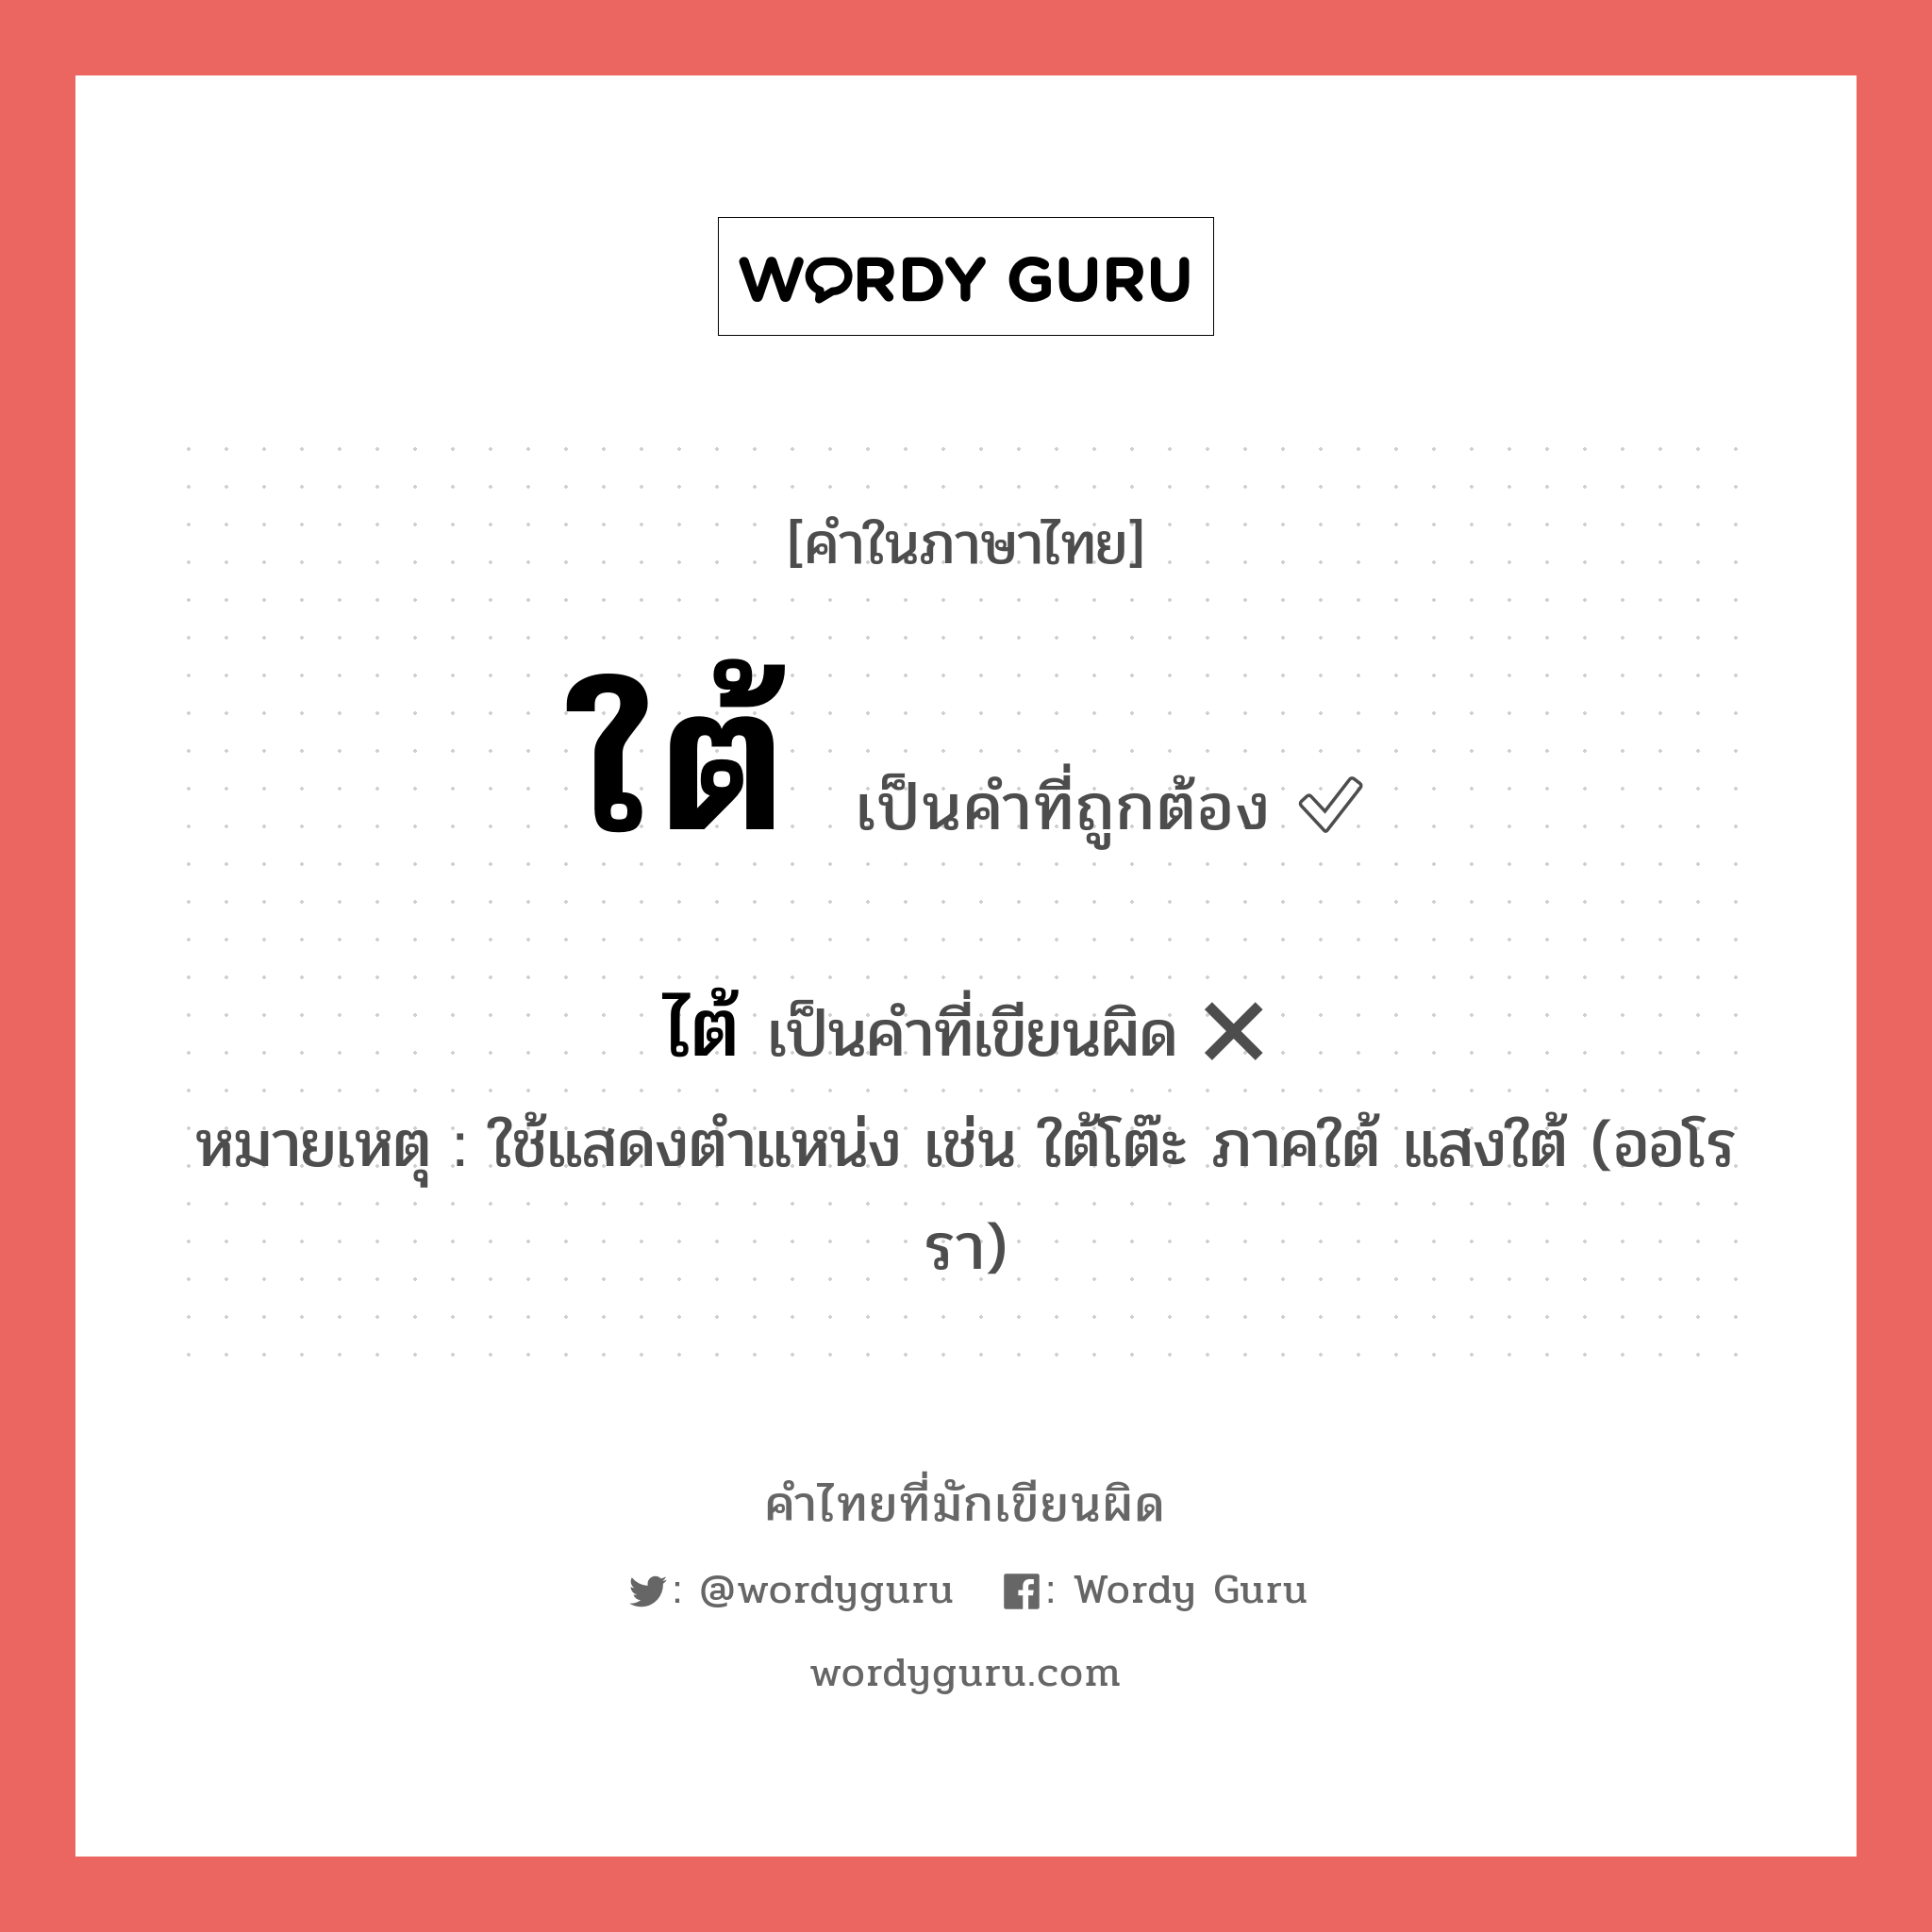 ใต้ หรือ ไต้ คำไหนเขียนถูก?, คำในภาษาไทยที่มักเขียนผิด ใต้ คำที่ผิด ❌ ไต้ หมายเหตุ ใช้แสดงตำแหน่ง เช่น ใต้โต๊ะ ภาคใต้ แสงใต้ (ออโรรา)